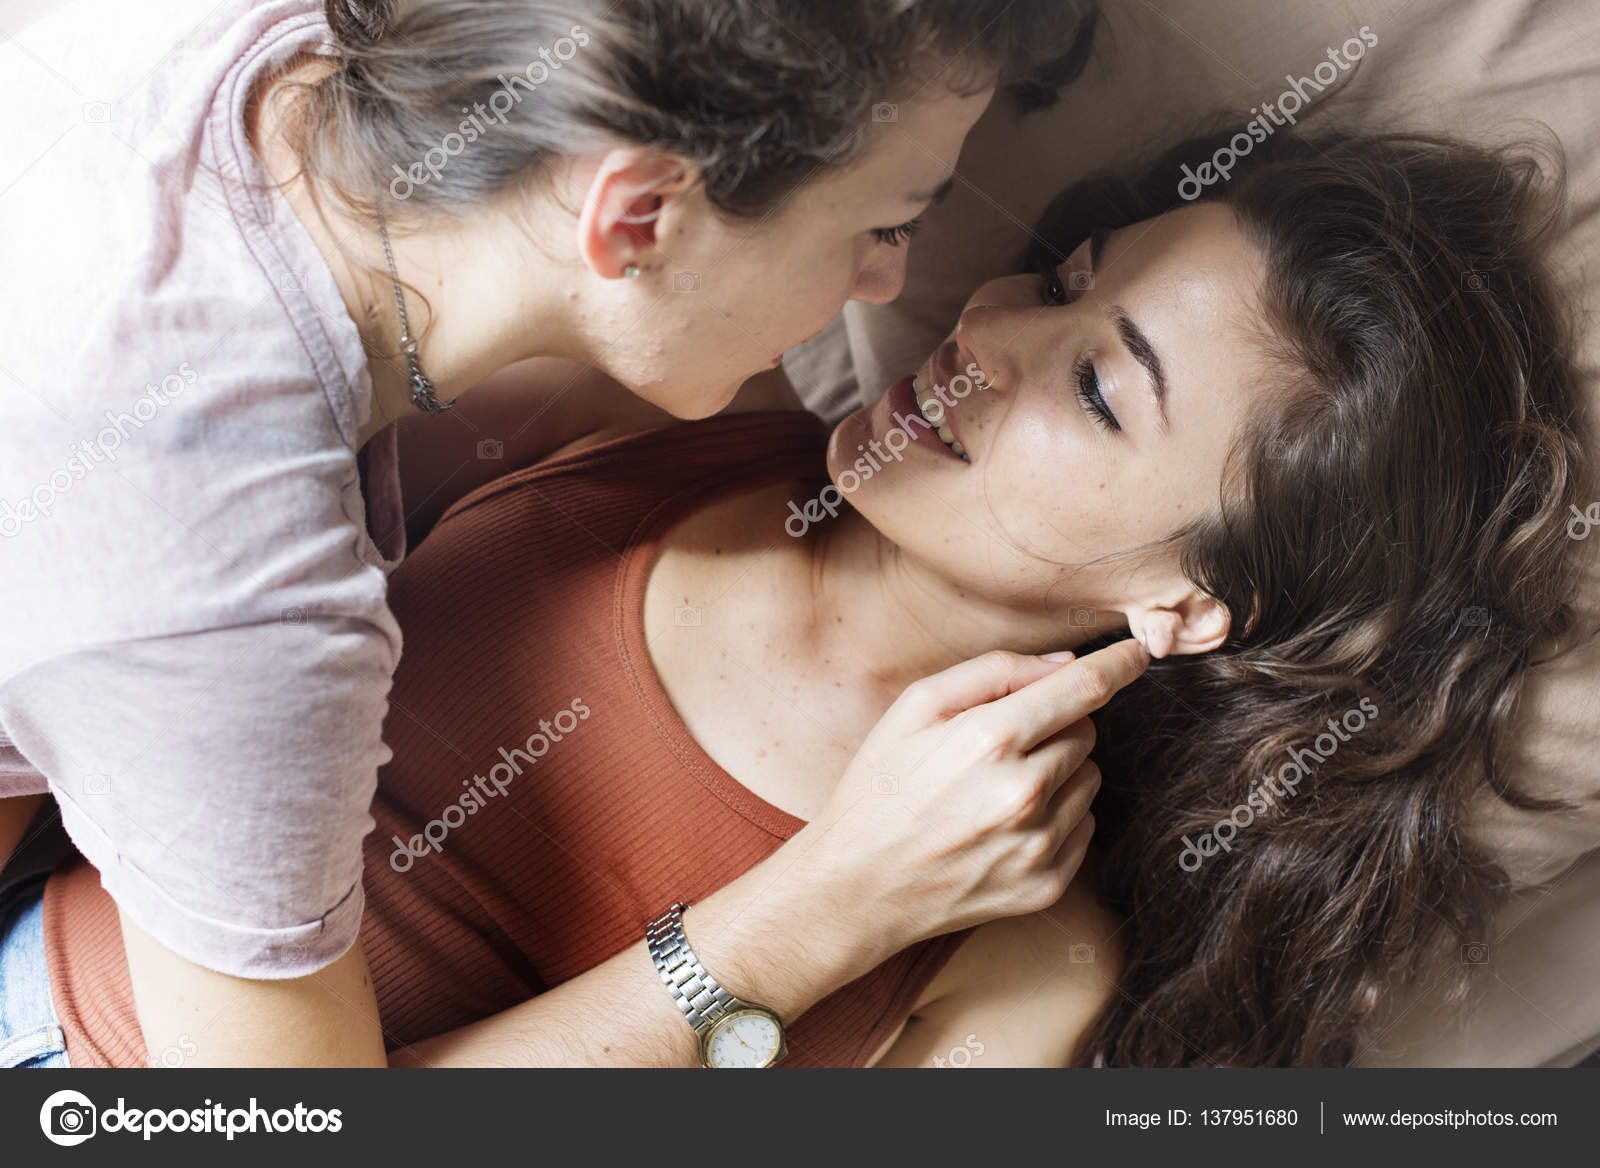 Lesbian page 1. Однополая любовь женщины к женщине. Поцелуй Стоковая девушки. Поцелуй двух девушек 5 минут. Лесбиянские отношения фотографии.